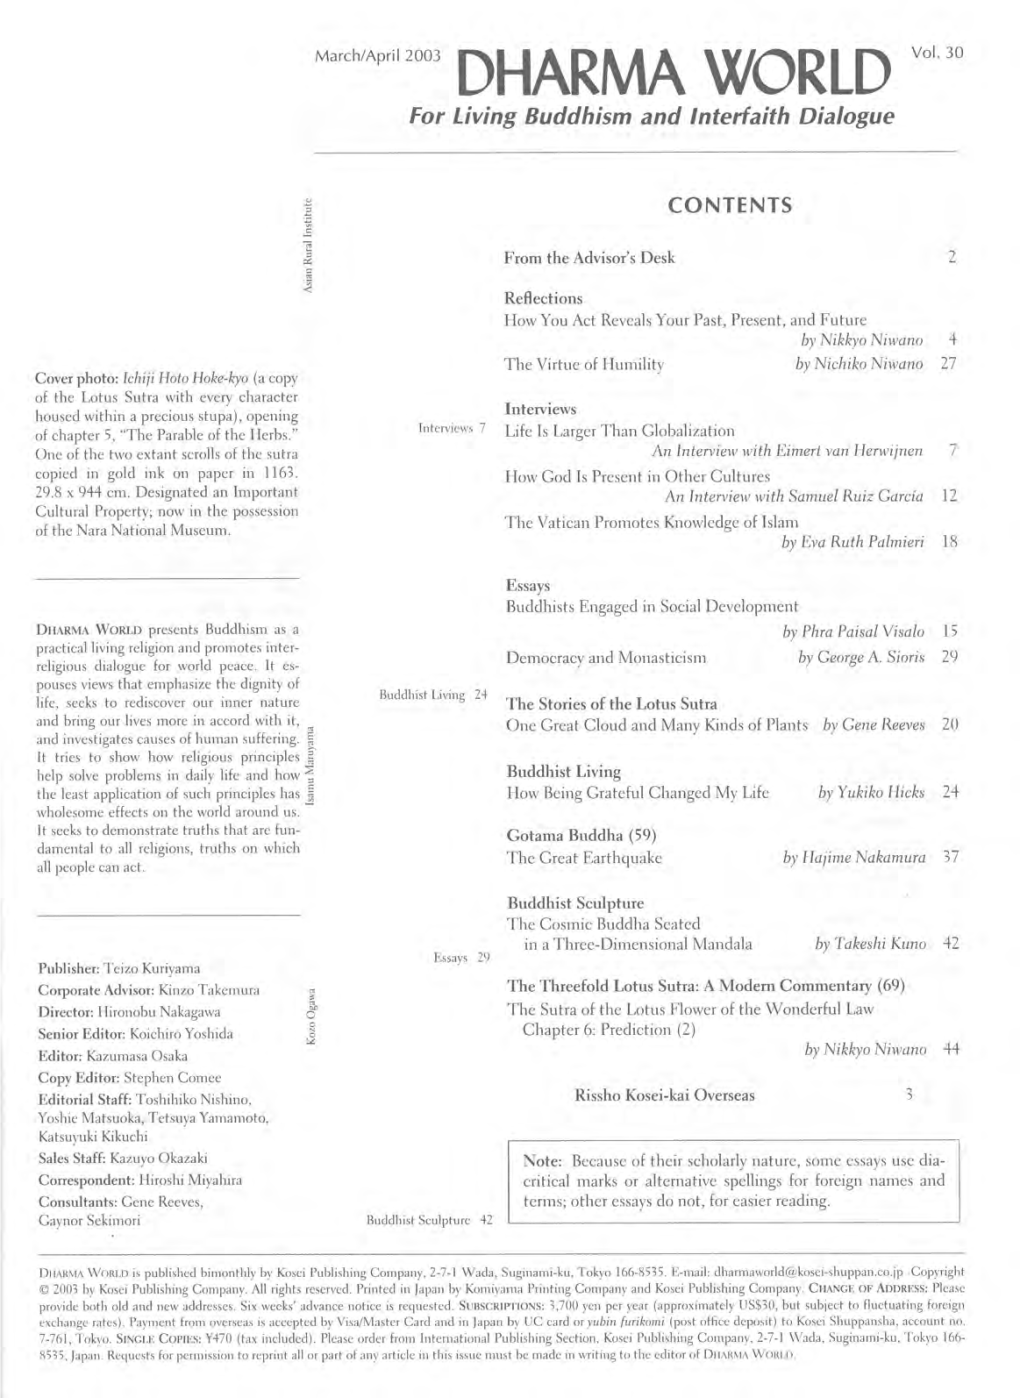 March-April 2003, Volume 30(PDF)